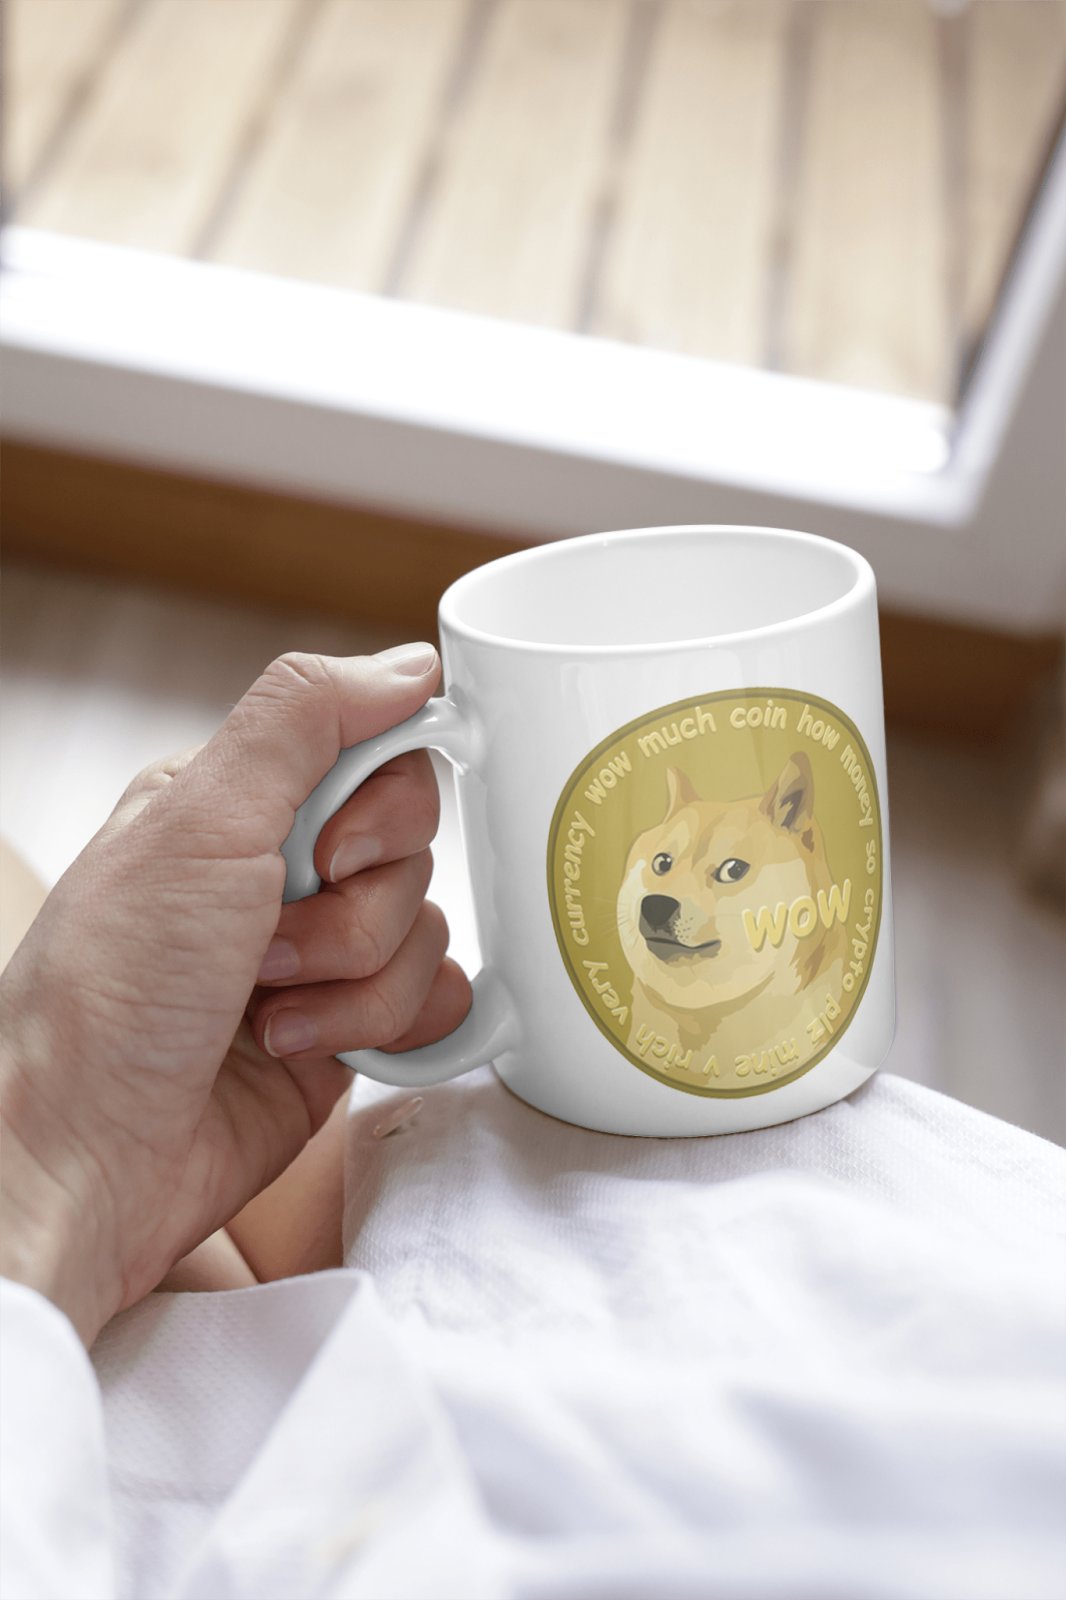 Mug mockup template with a Dogecoin meme